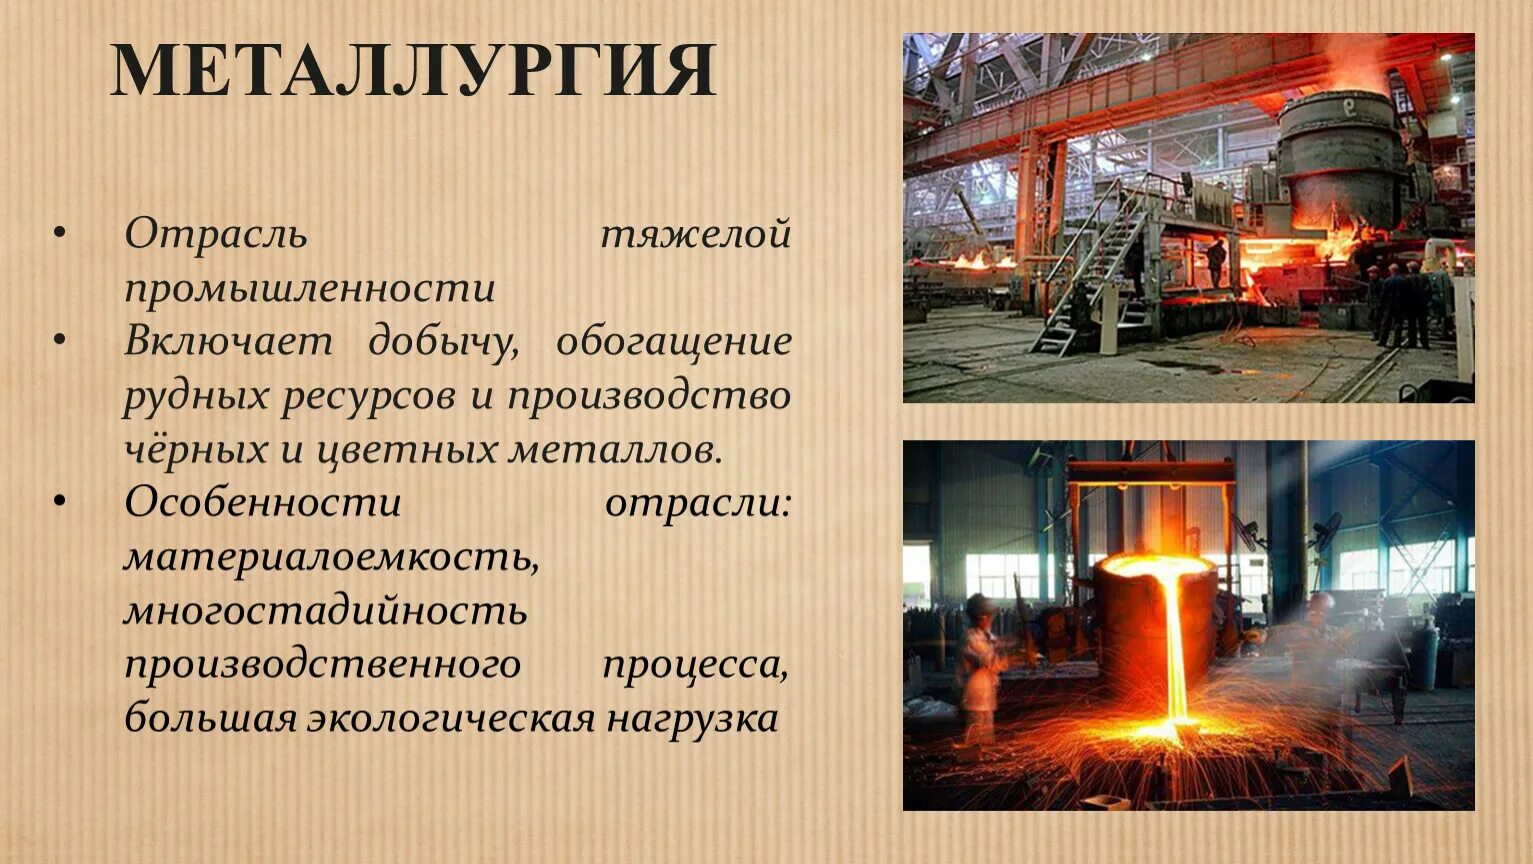 Металлургия. Металлургия промышленность. Отрасли металлургии. Металлургия отрасль промышленности.